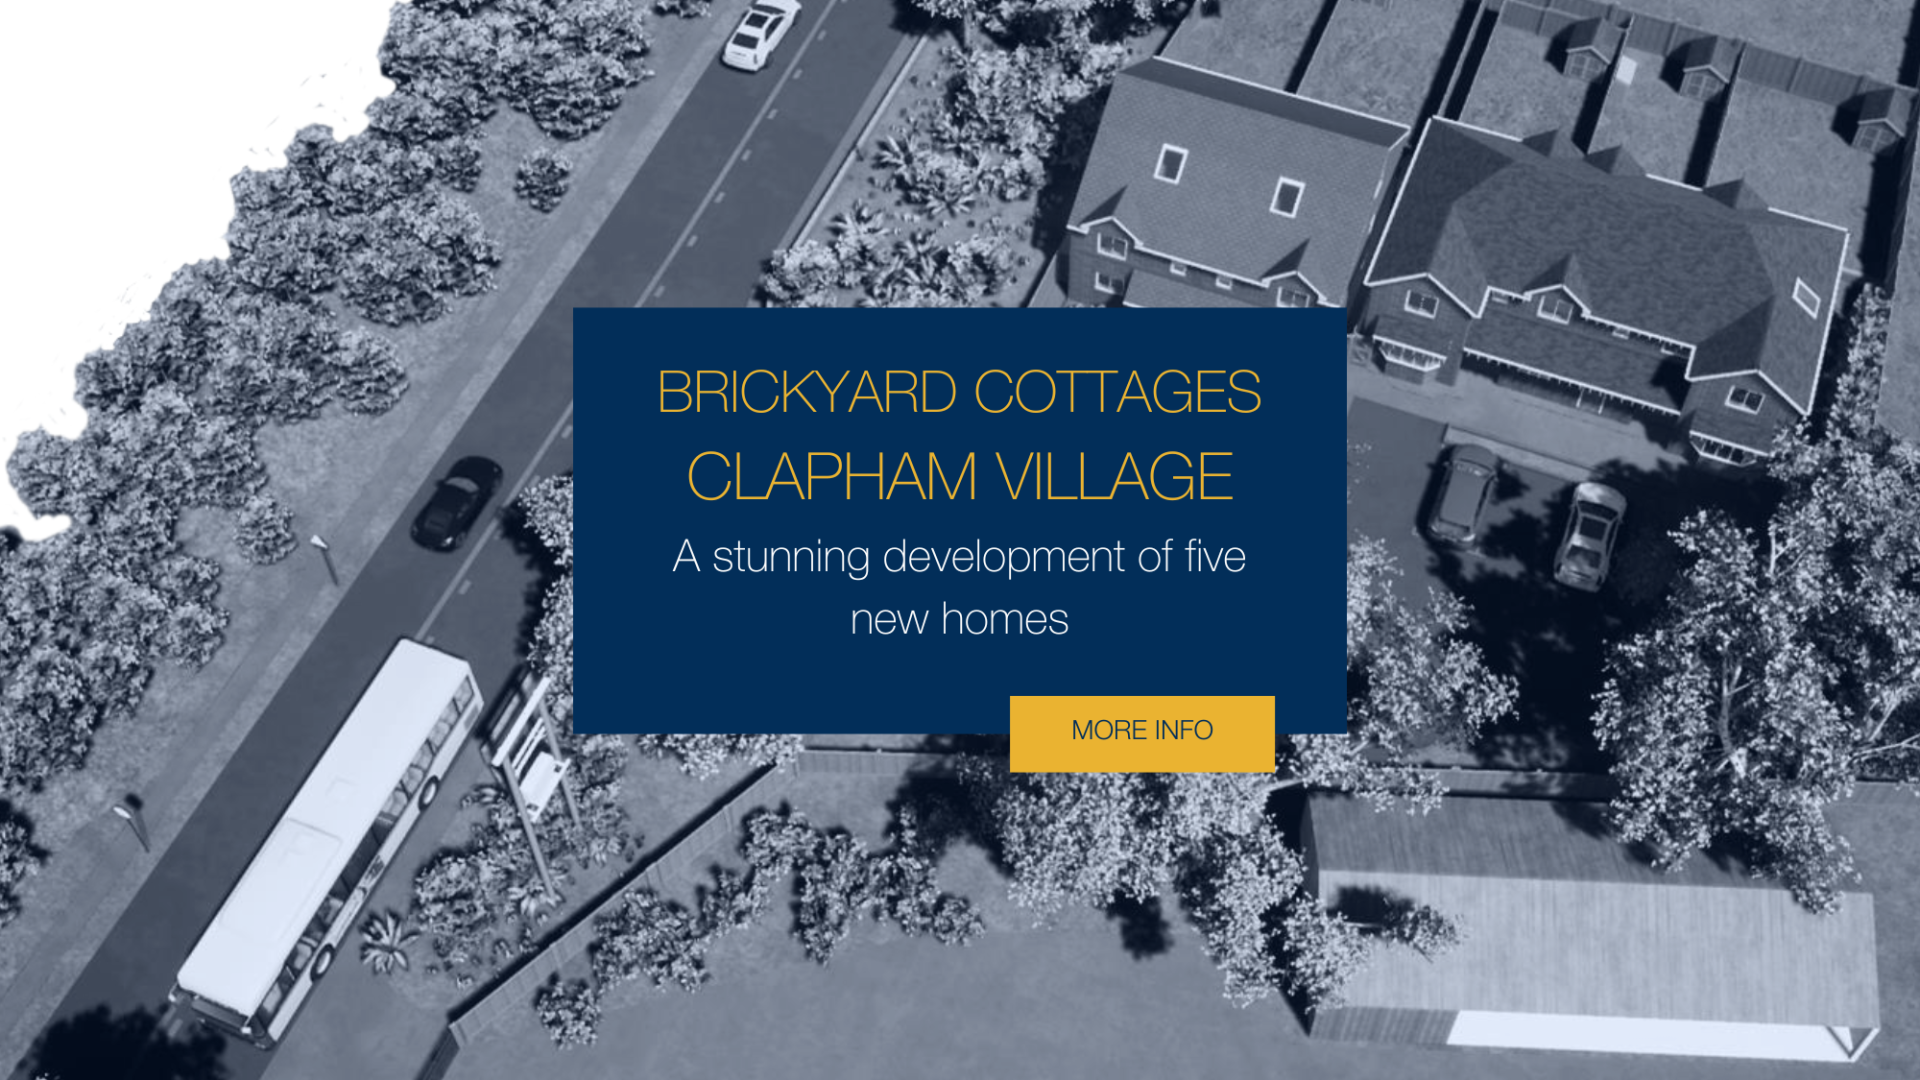 Brickyard Cottages